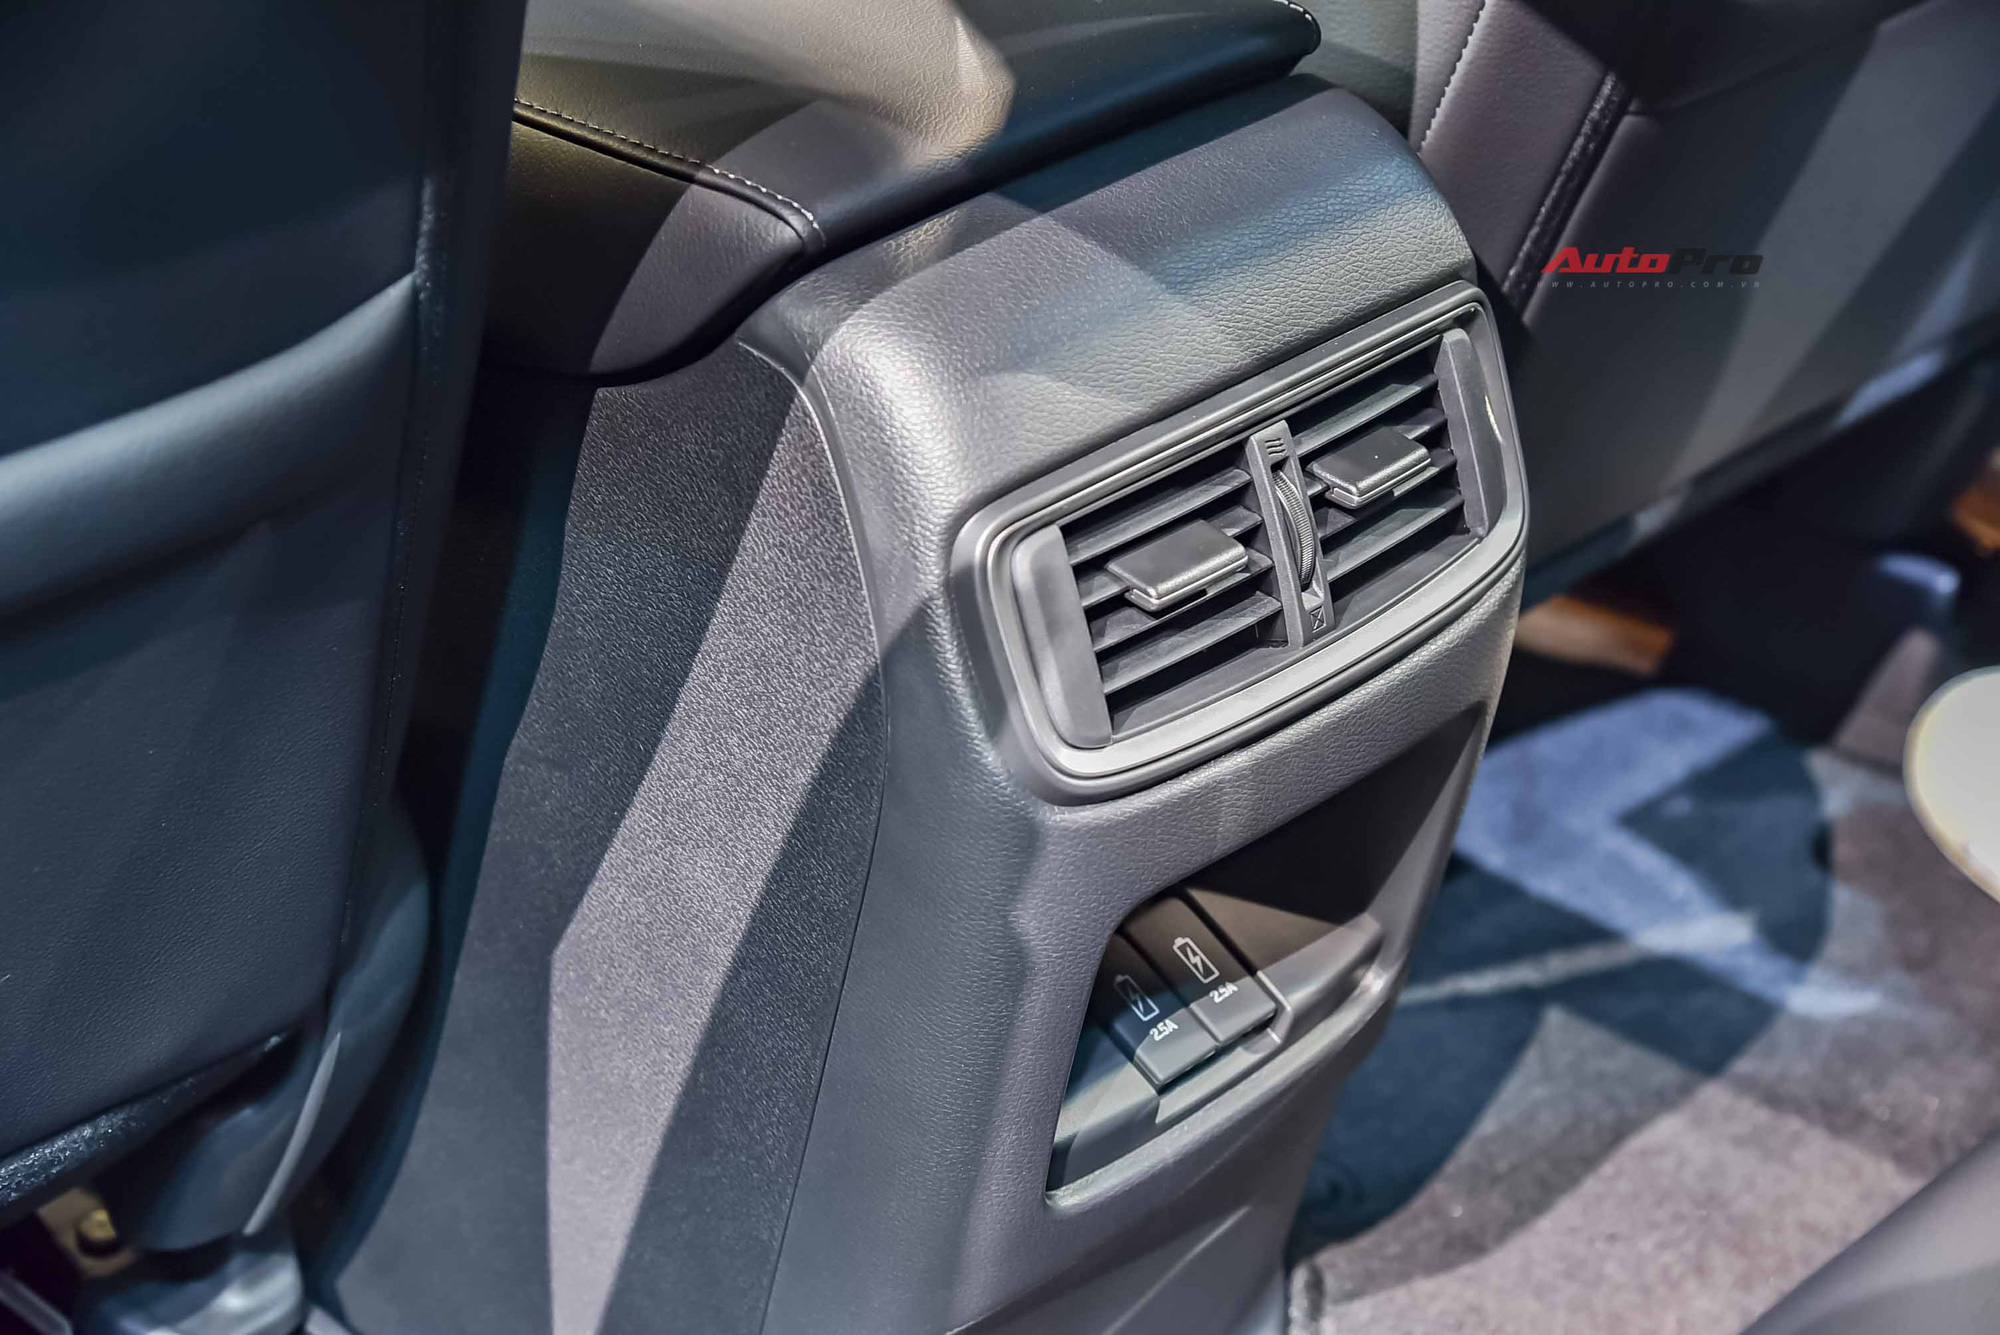 Honda CR-V 2020 lắp ráp giá từ 998 triệu đồng: Tiêu chuẩn hoá công nghệ an toàn khủng đấu Mazda CX-5 - Ảnh 8.